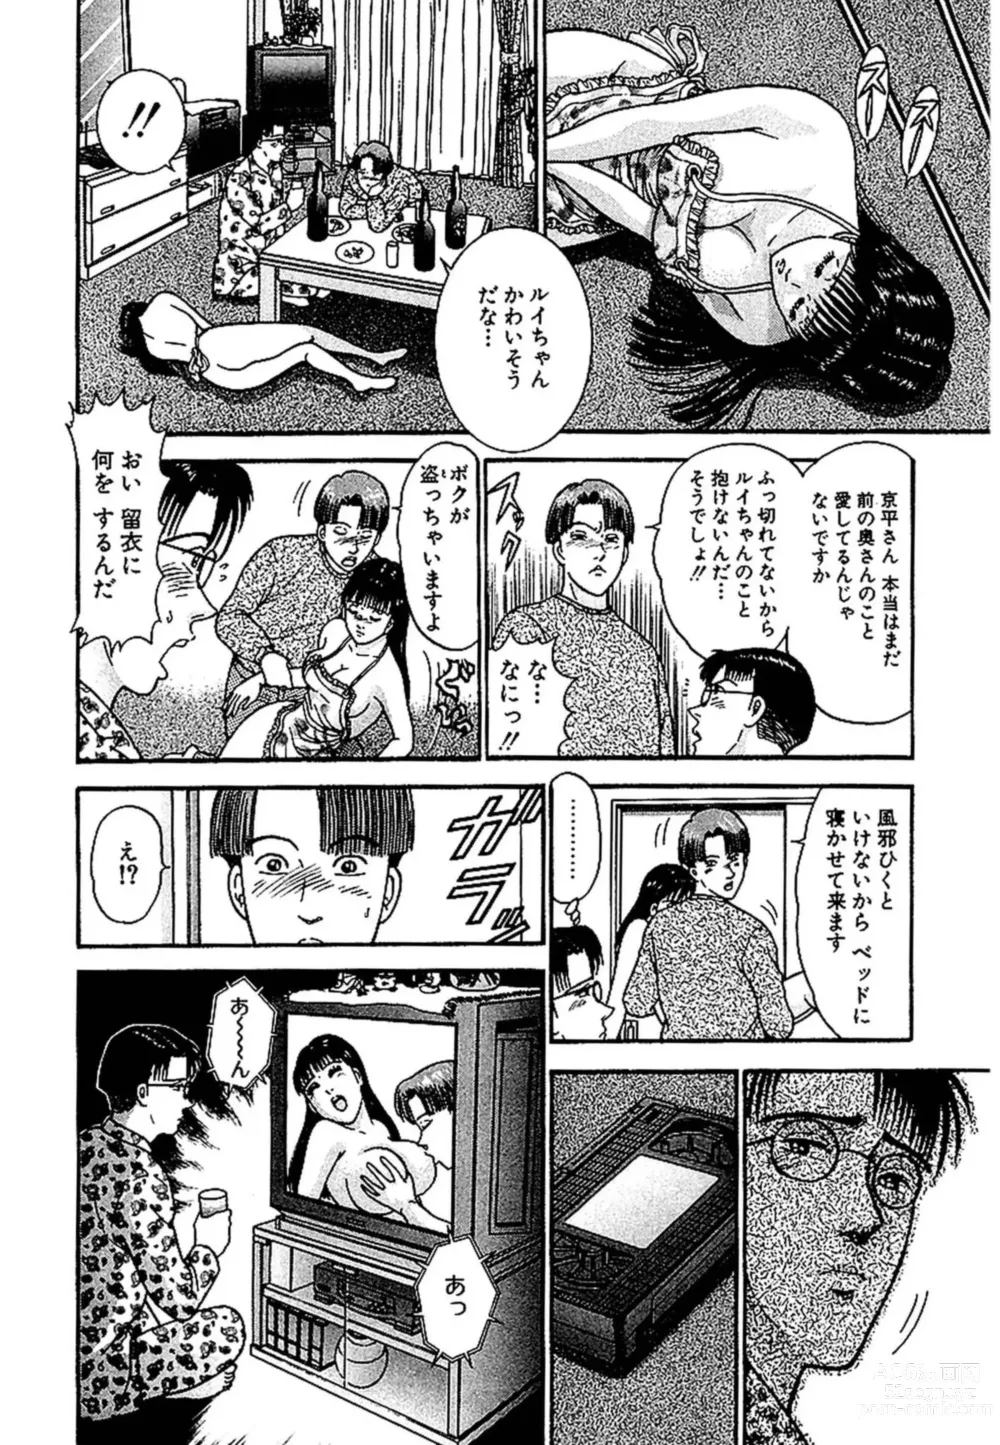 Page 36 of manga Sekkusuresu Shinsō-ban 1